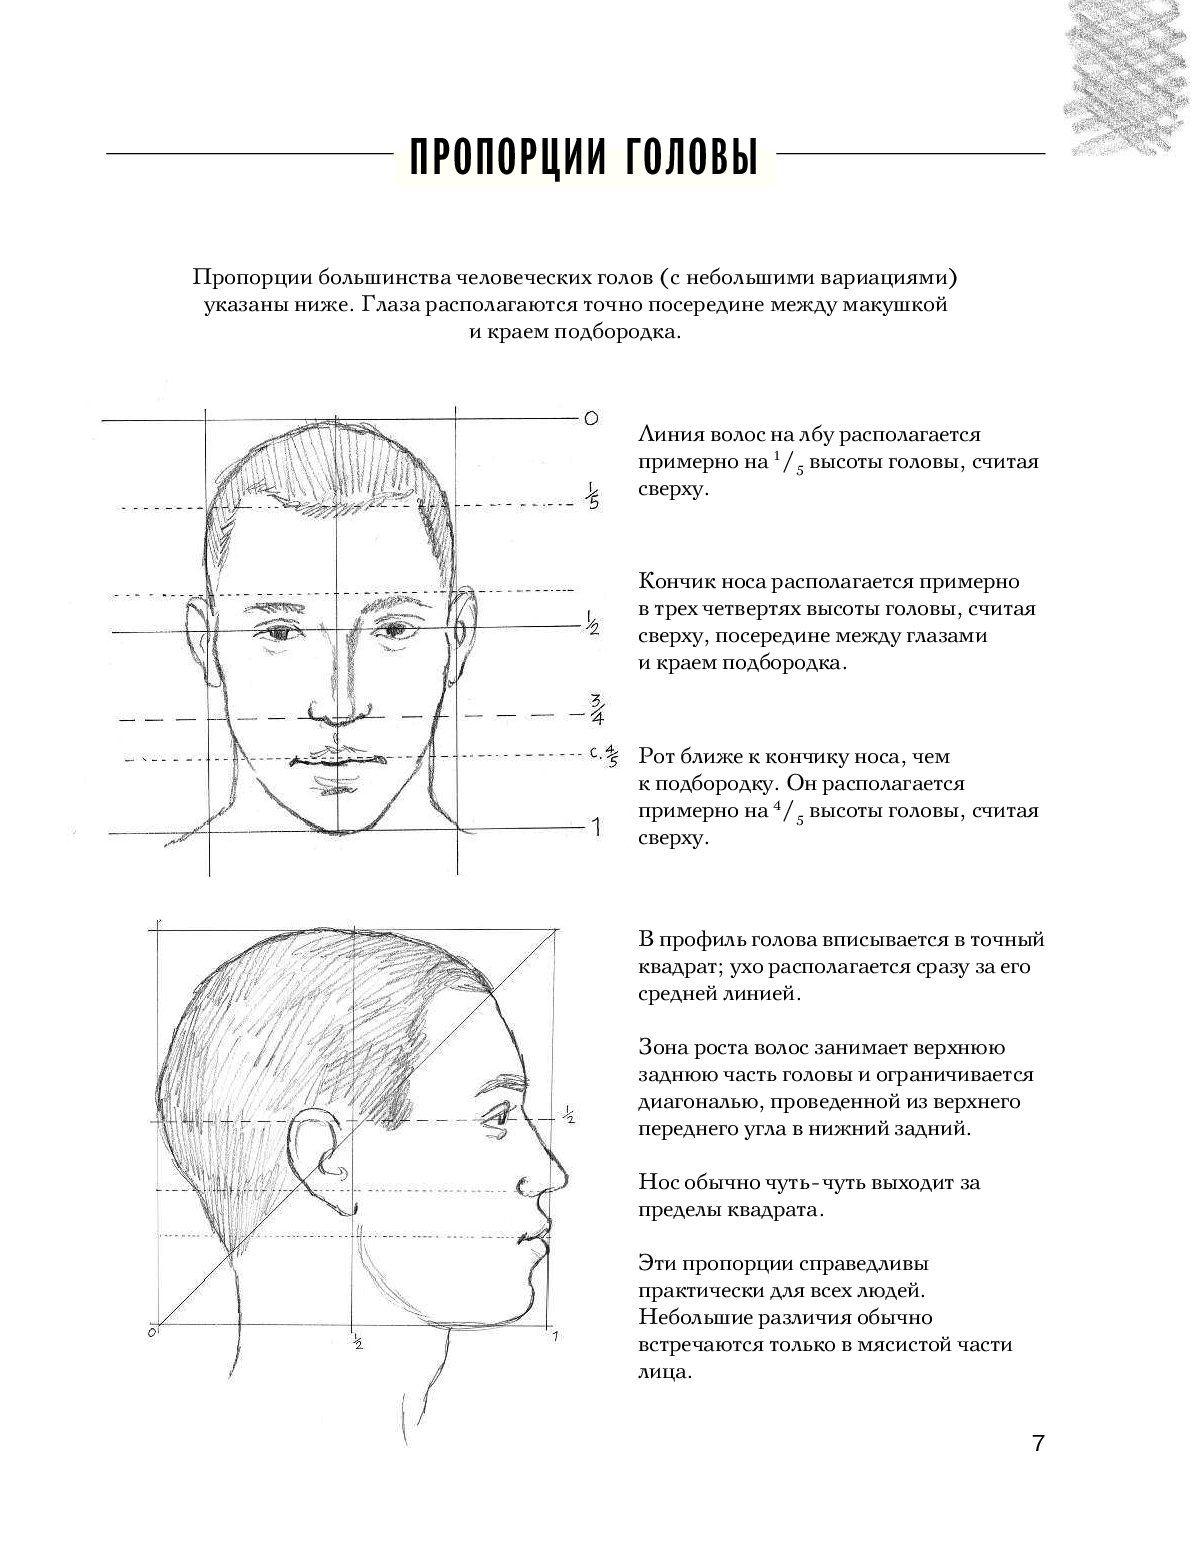 Памятка пропорции головы человека